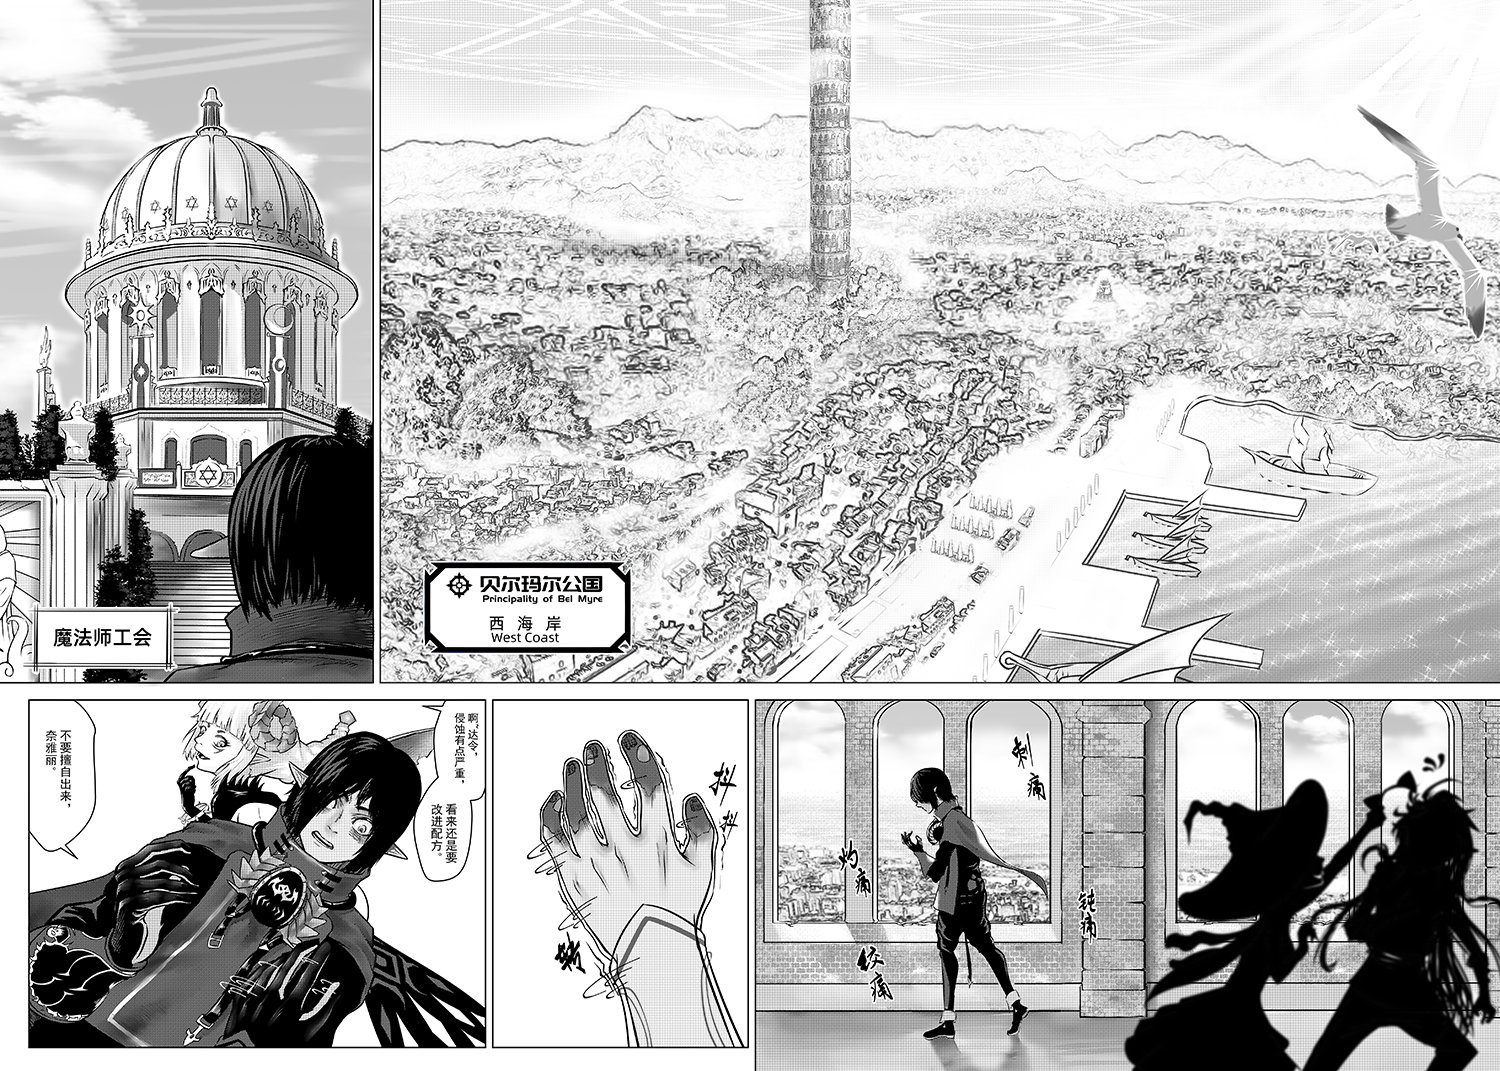 地下城与勇士同人漫画《我们的故事》第二话:囚徒4